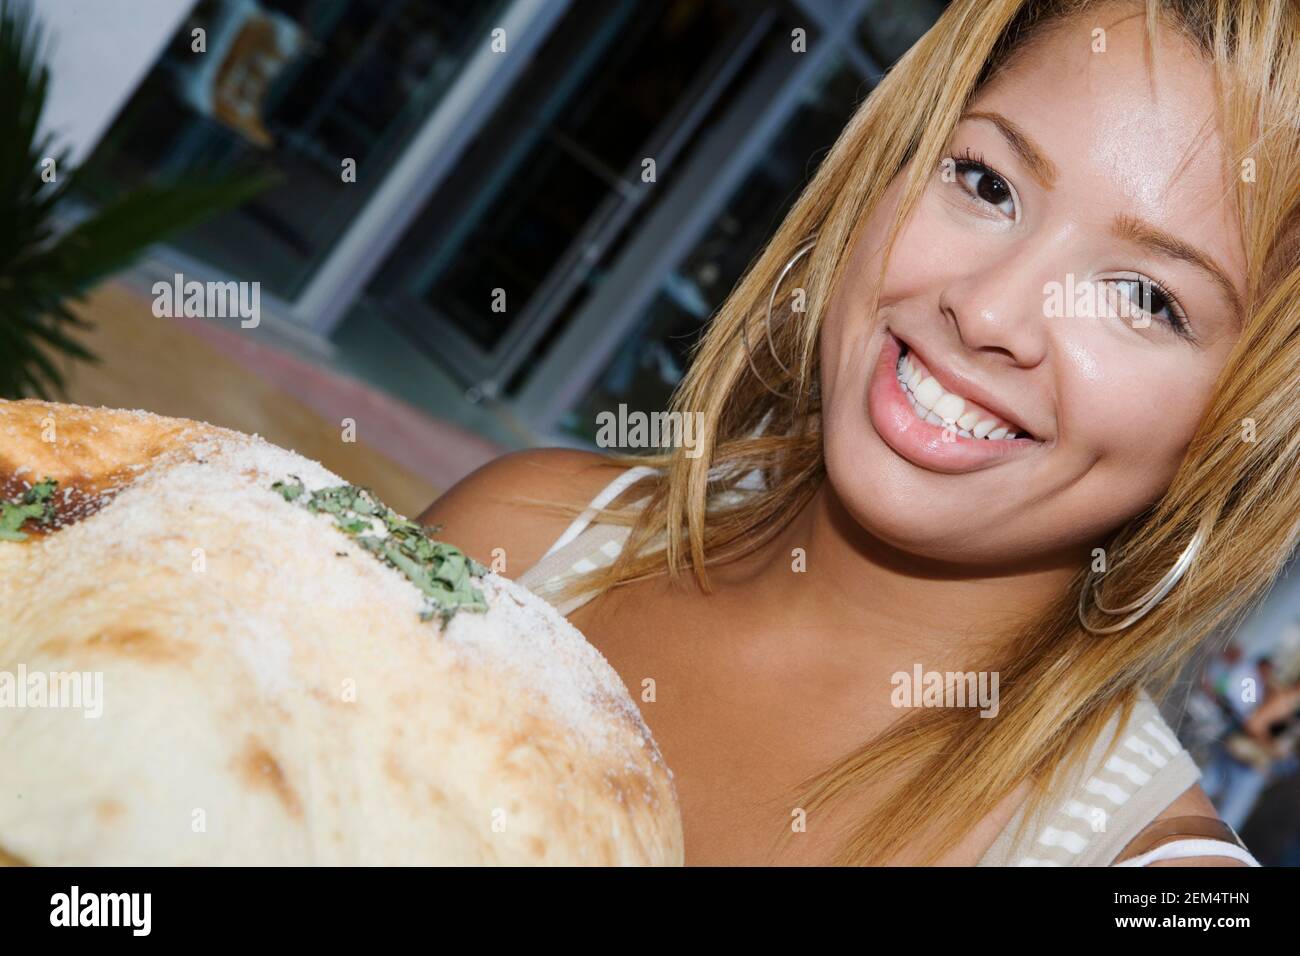 Porträt einer jungen Frau vor süßem Essen Stockfoto